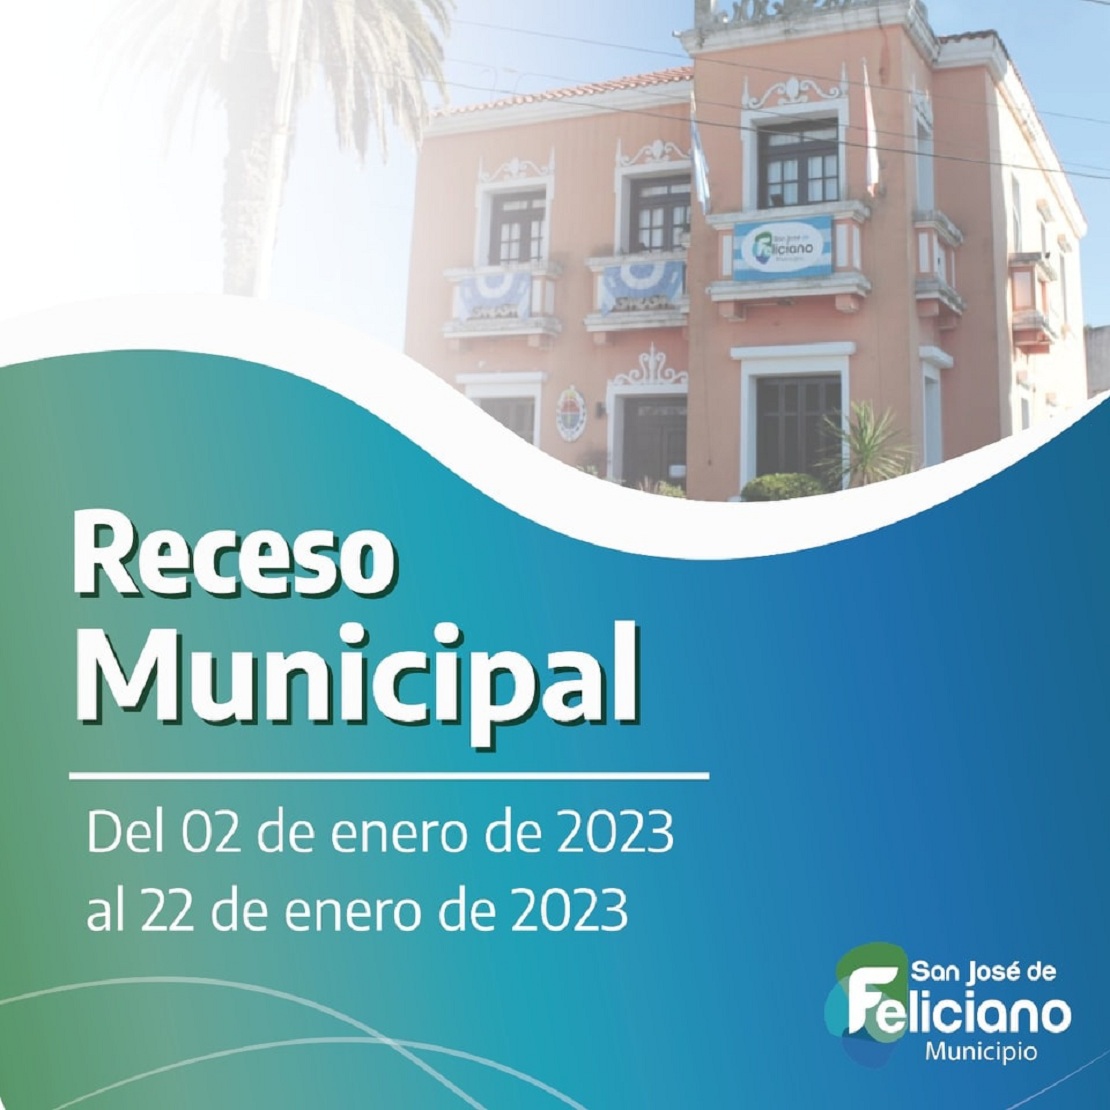 Receso Municipal